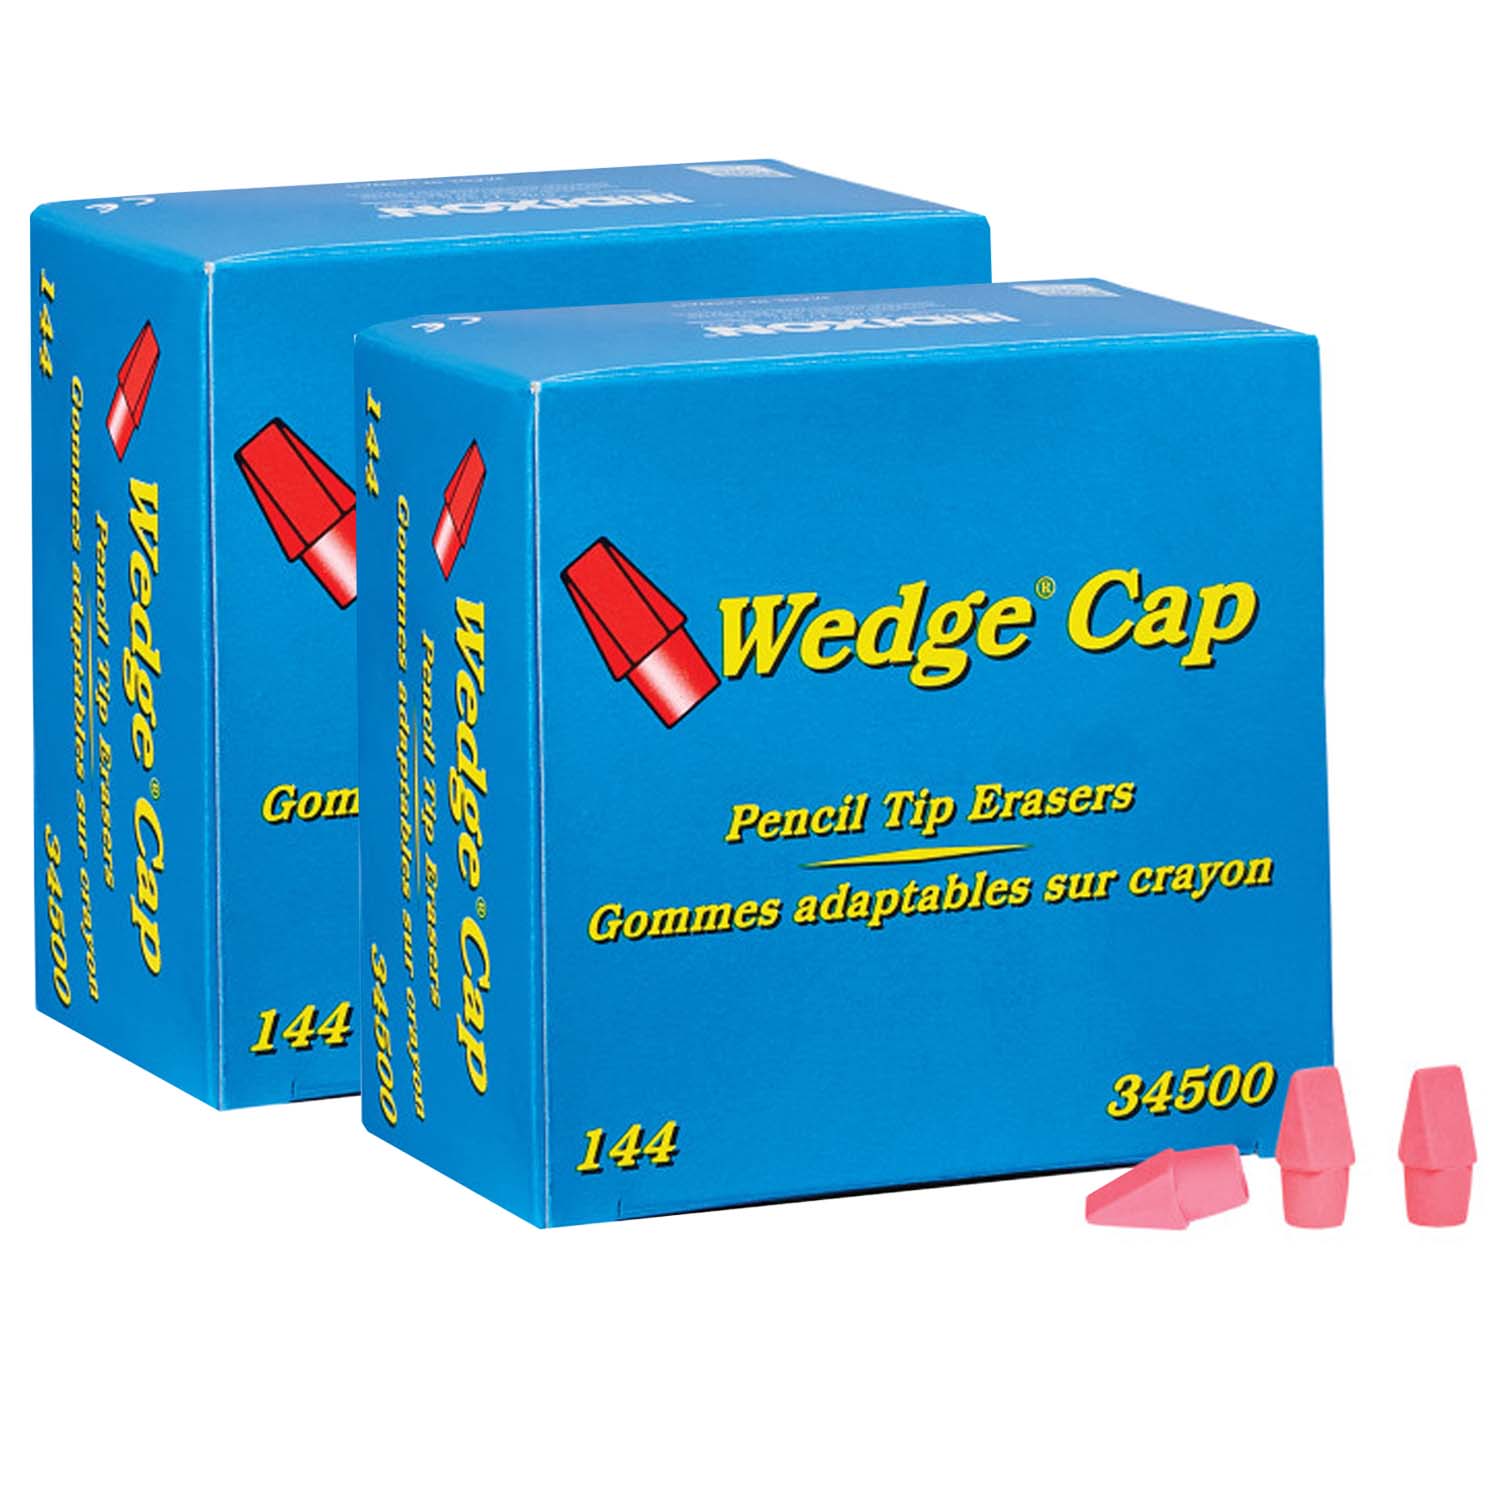 Wedge Pencil Cap Erasers, Pink, 144 Per Pack, 2 Packs